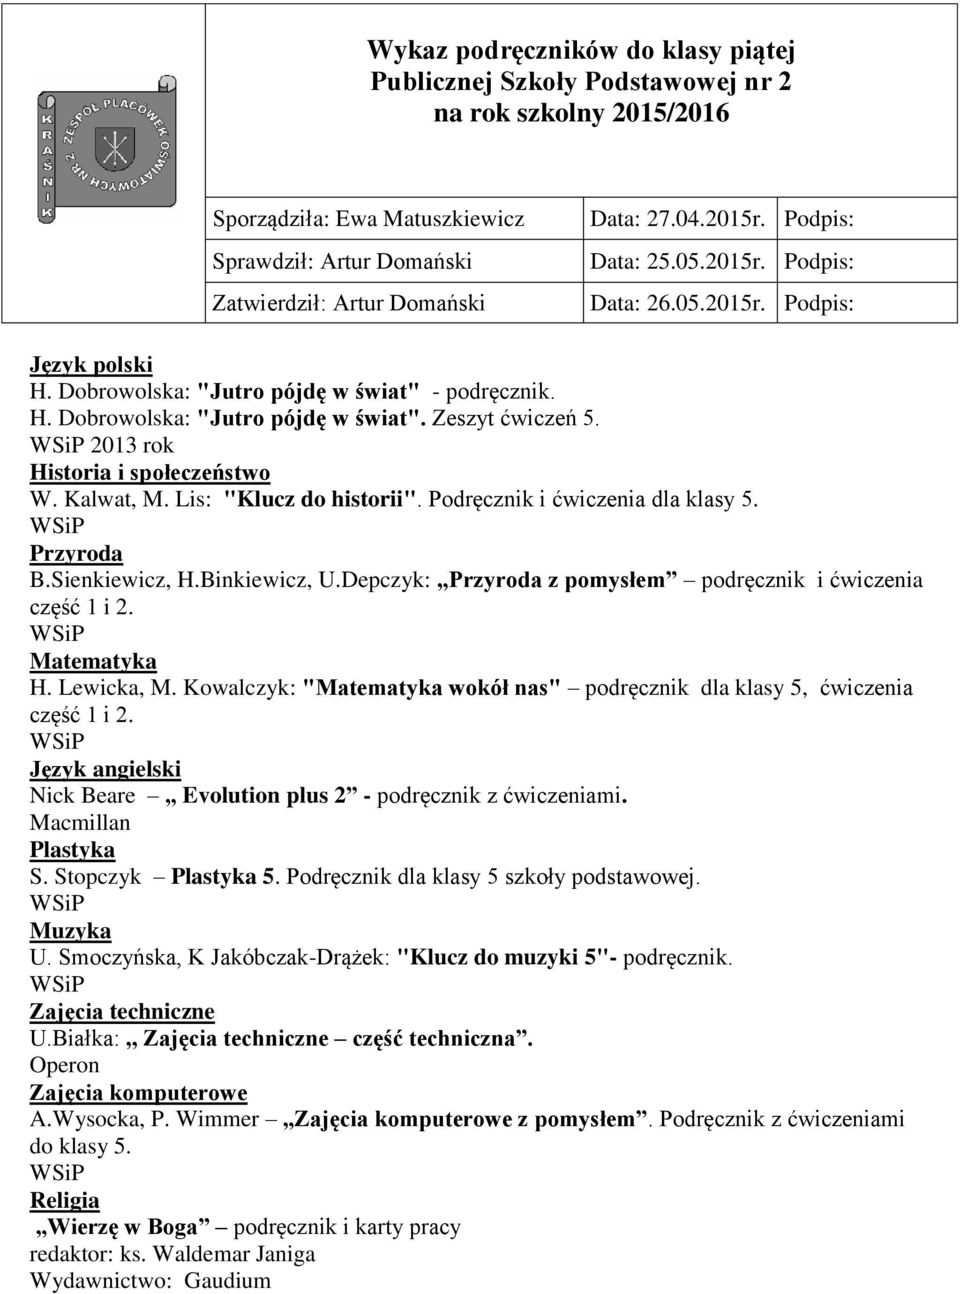 Lewicka, M. Kowalczyk: "Matematyka wokół nas" podręcznik dla klasy 5, ćwiczenia część 1 i 2. Język angielski Nick Beare Evolution plus 2 - podręcznik z ćwiczeniami. Macmillan Plastyka S.